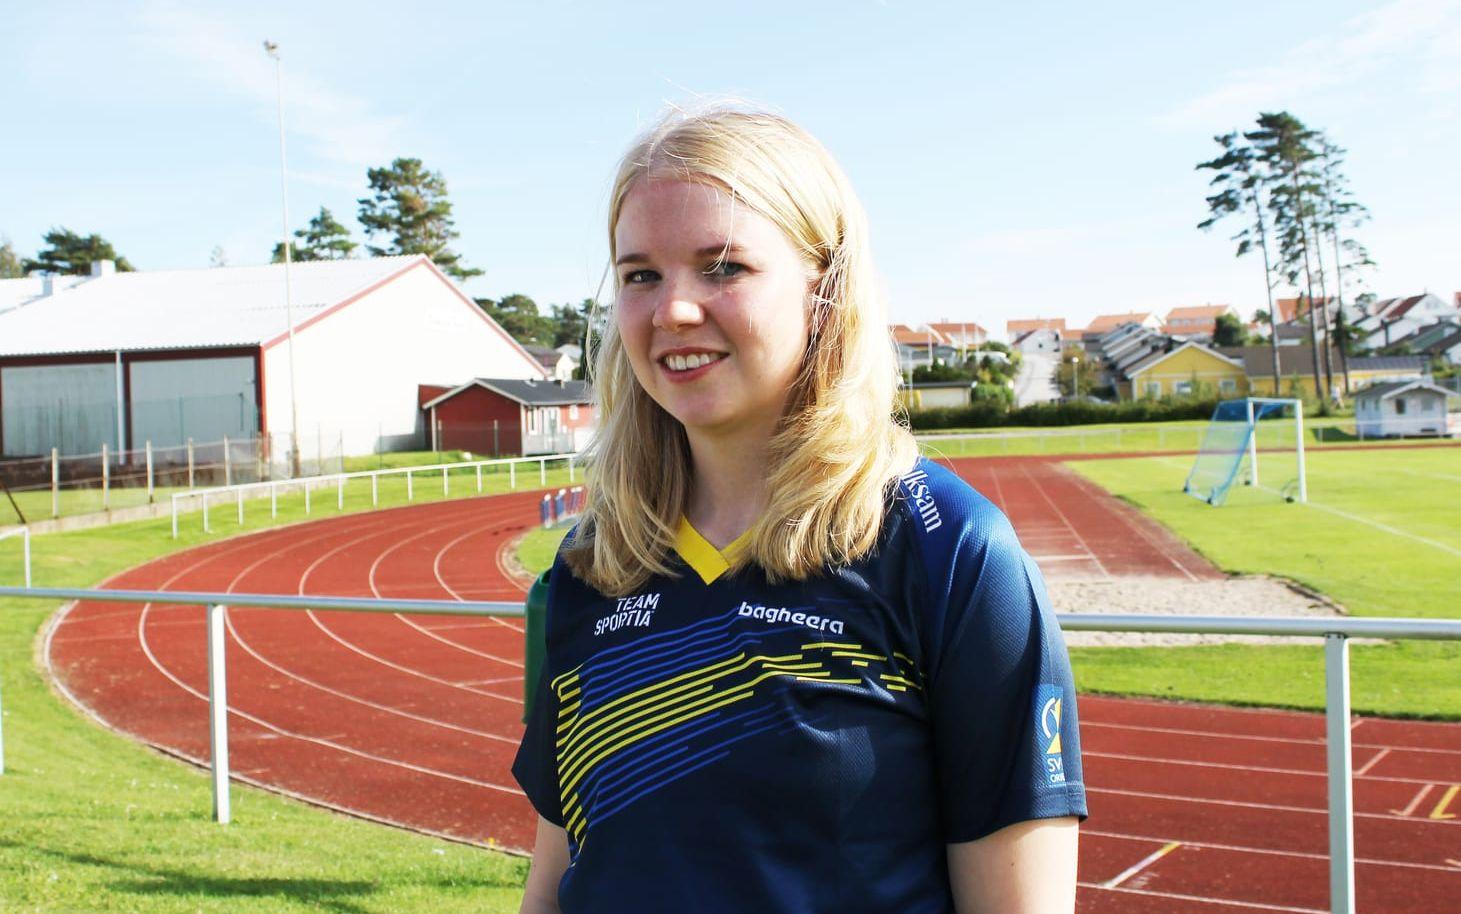 Lycklig silvermedaljör. Marit Wiksell stod för en stark prestation och såg till att Sverige fick en medalj i precisionsorientering.